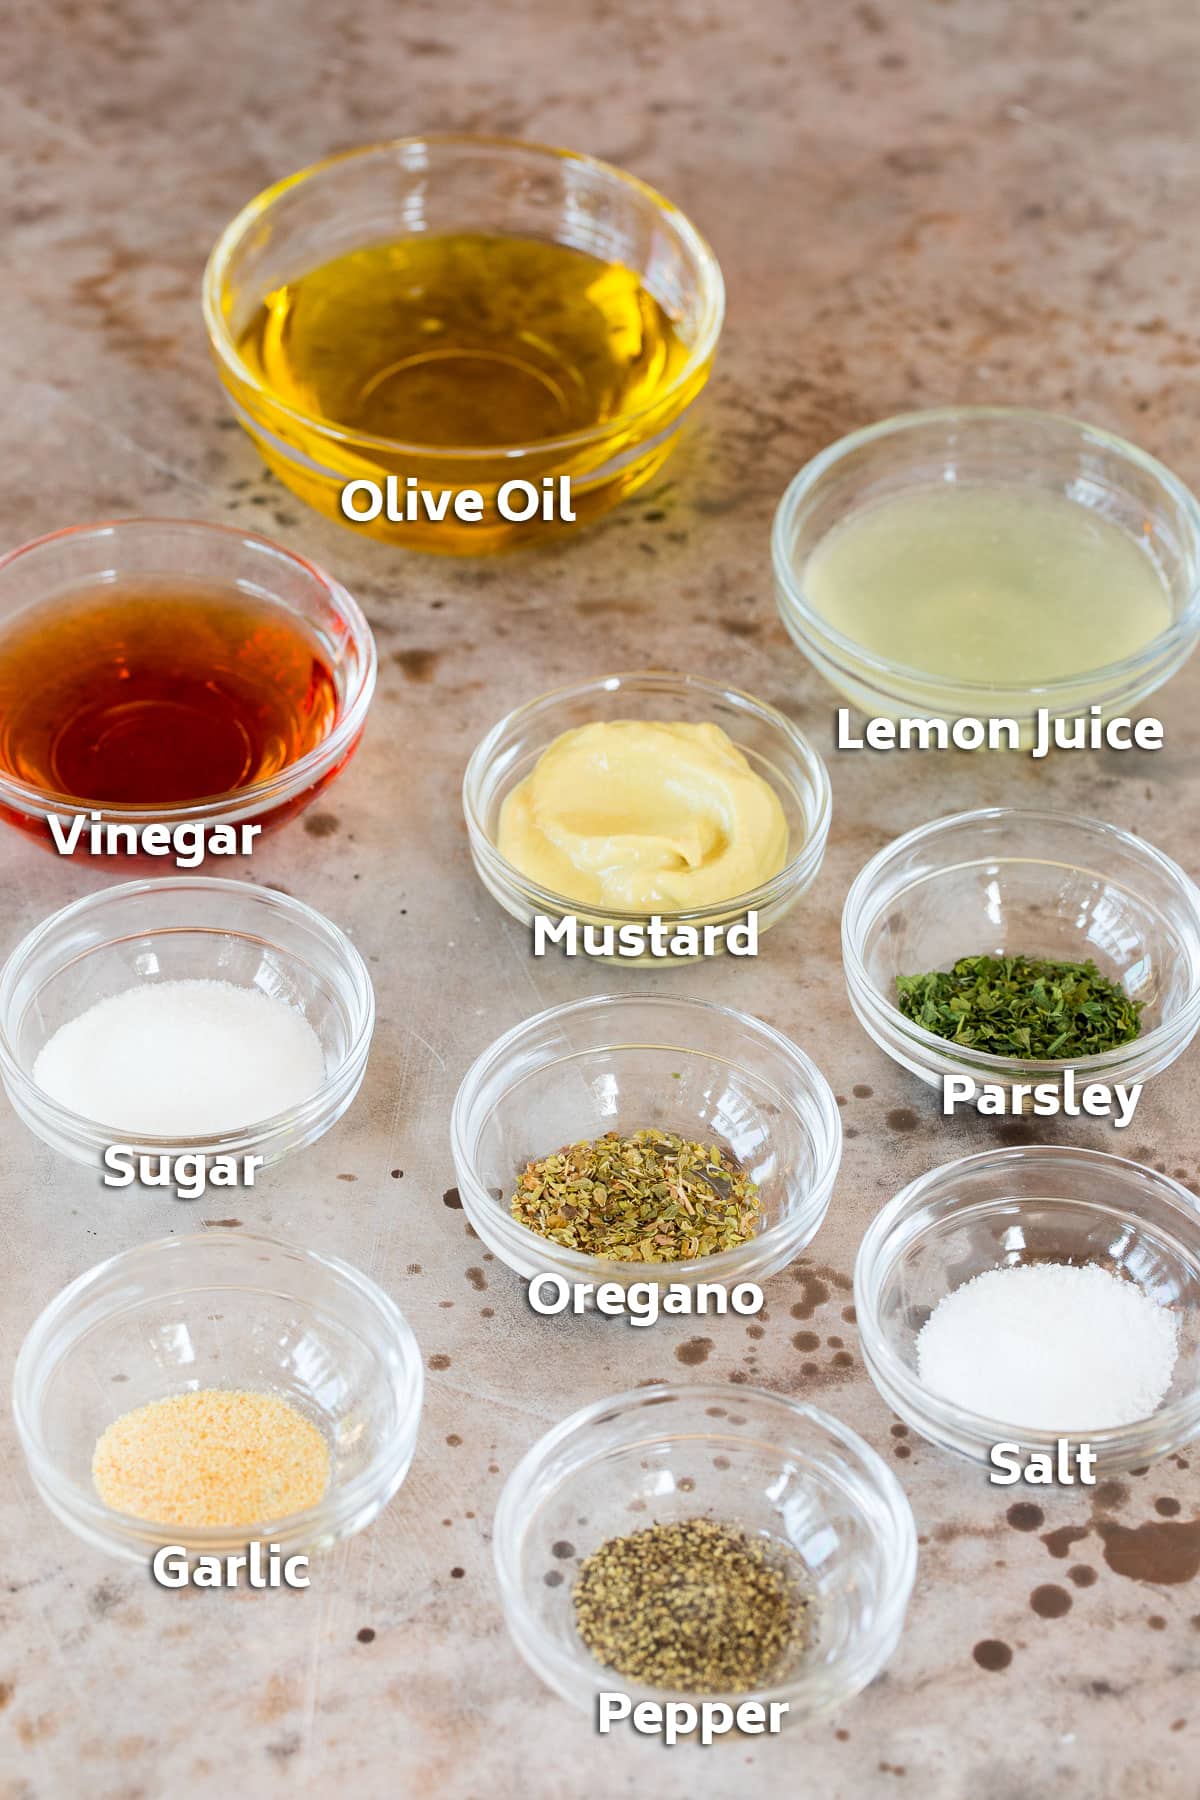 Bowls of ingredients to make salad dressing.